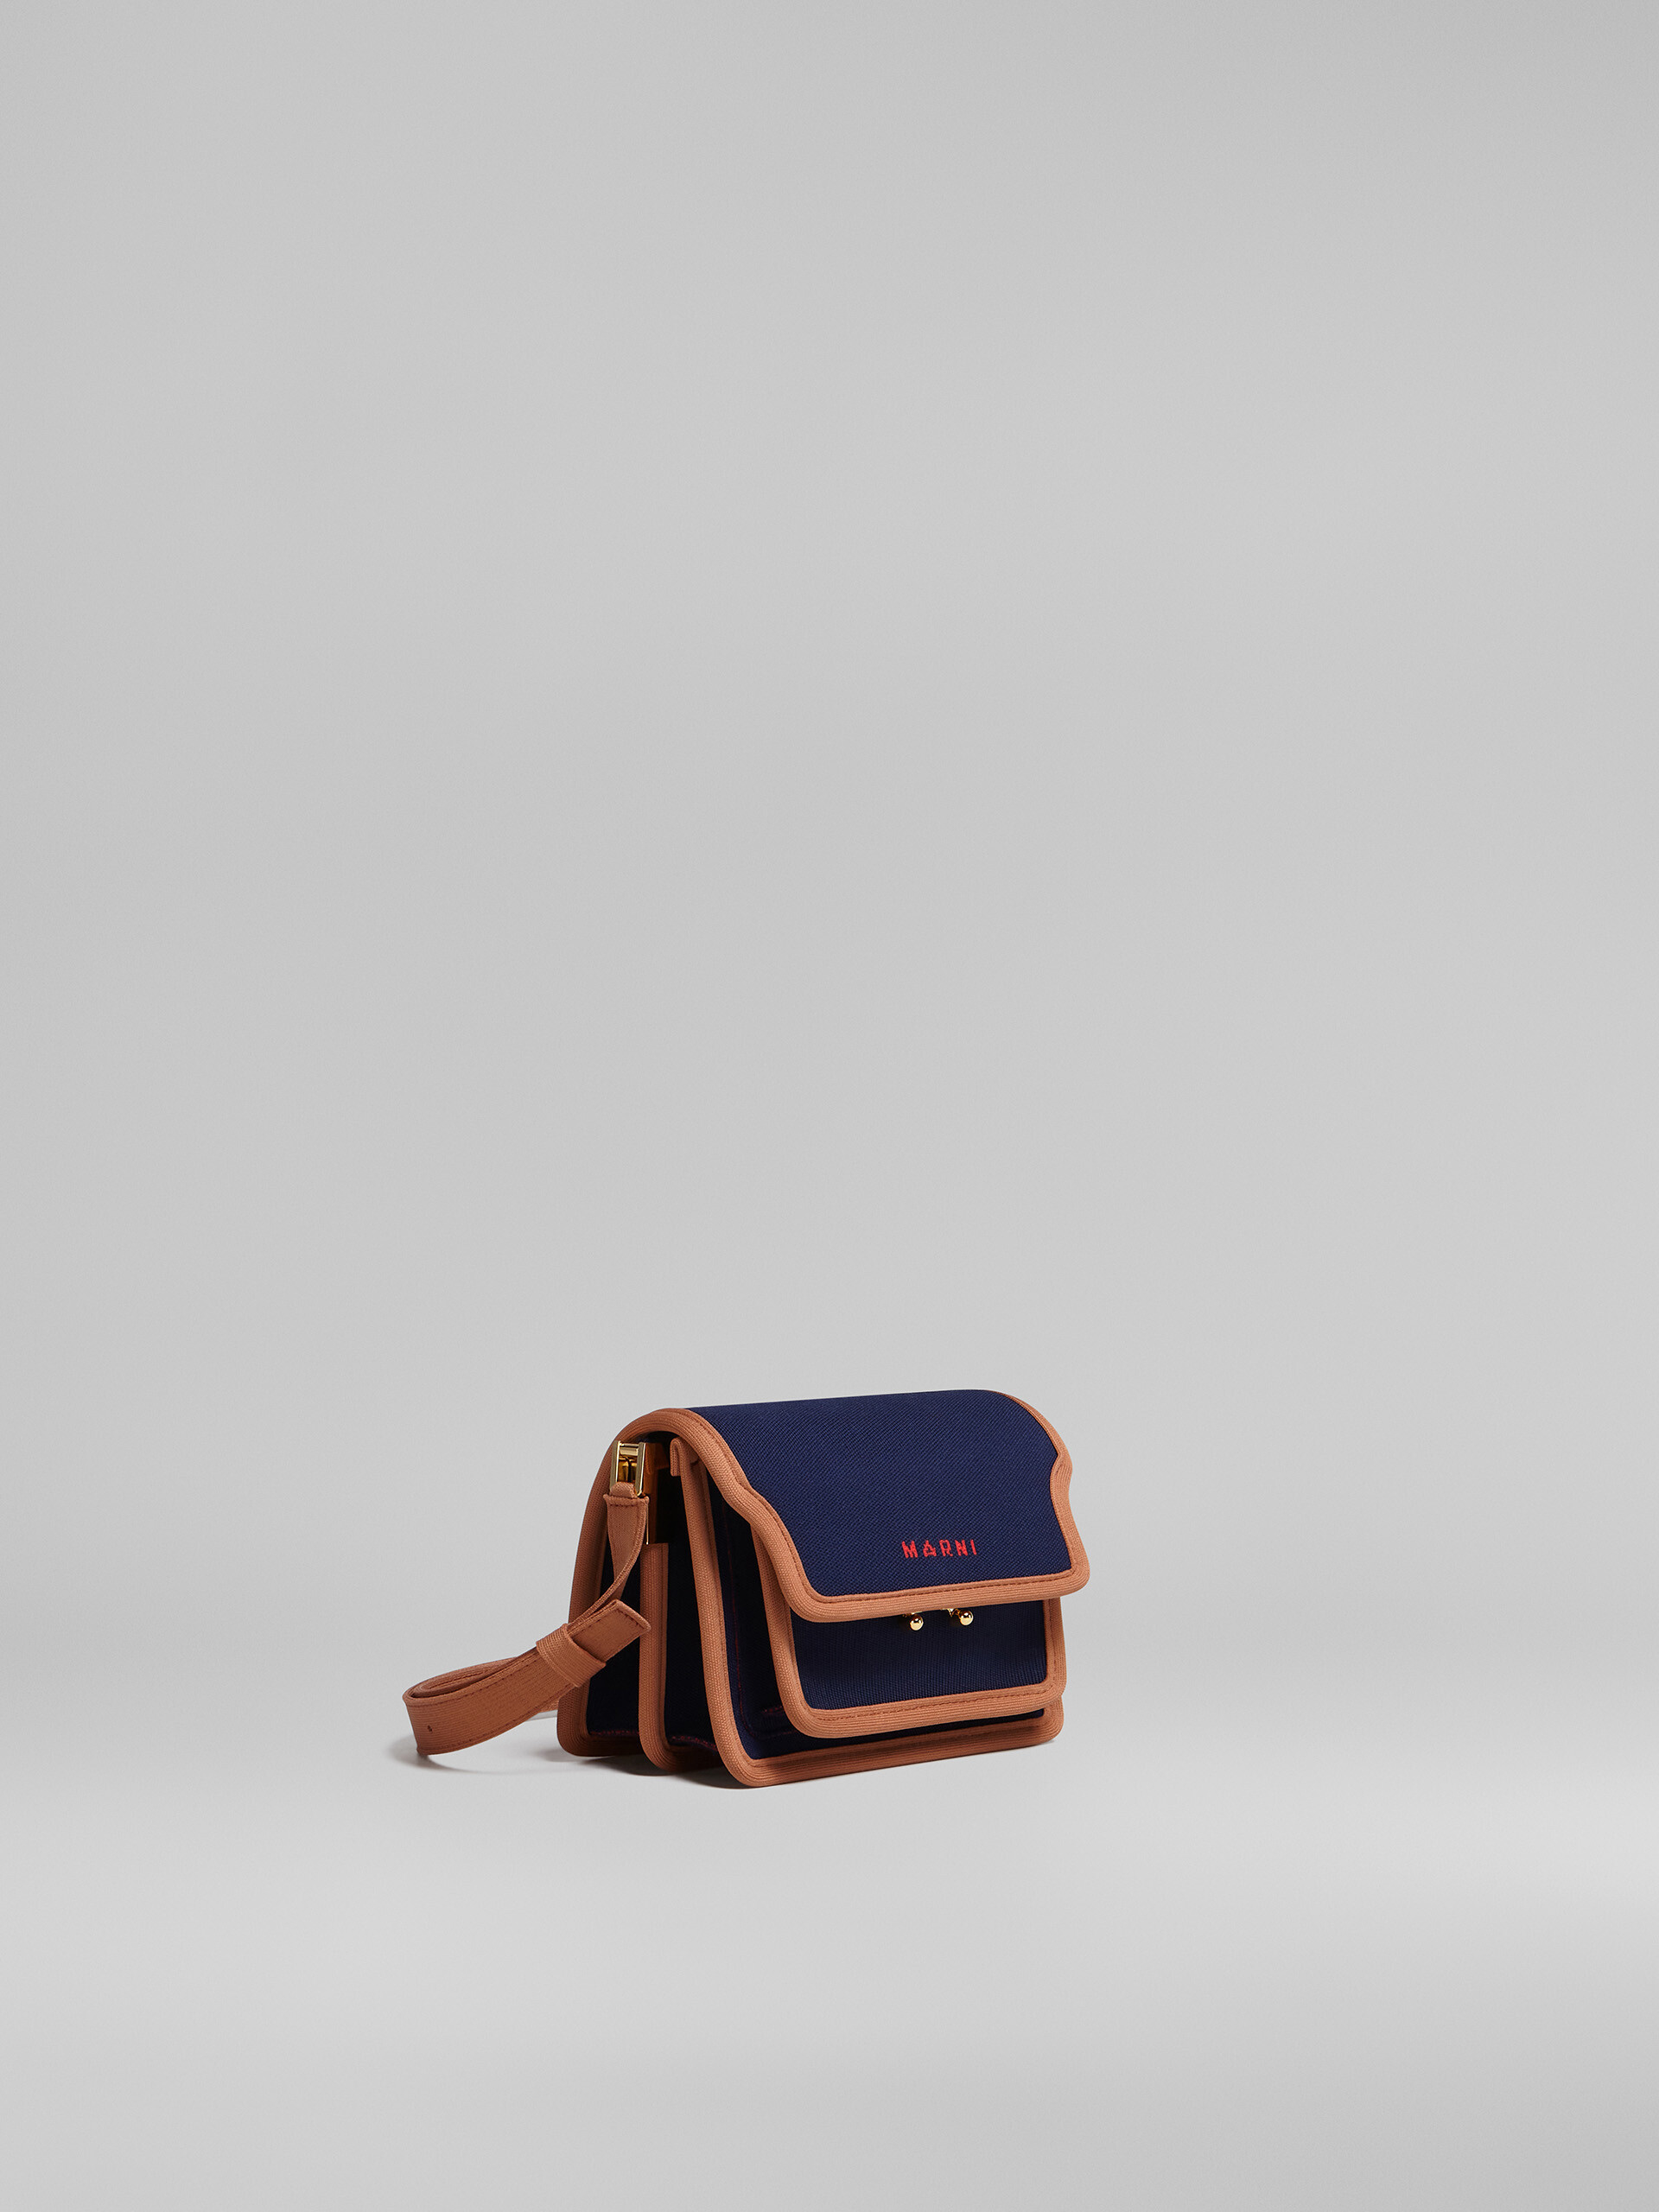 TRUNK SOFT bag mini in jacquard blu e marrone - Borse a spalla - Image 6